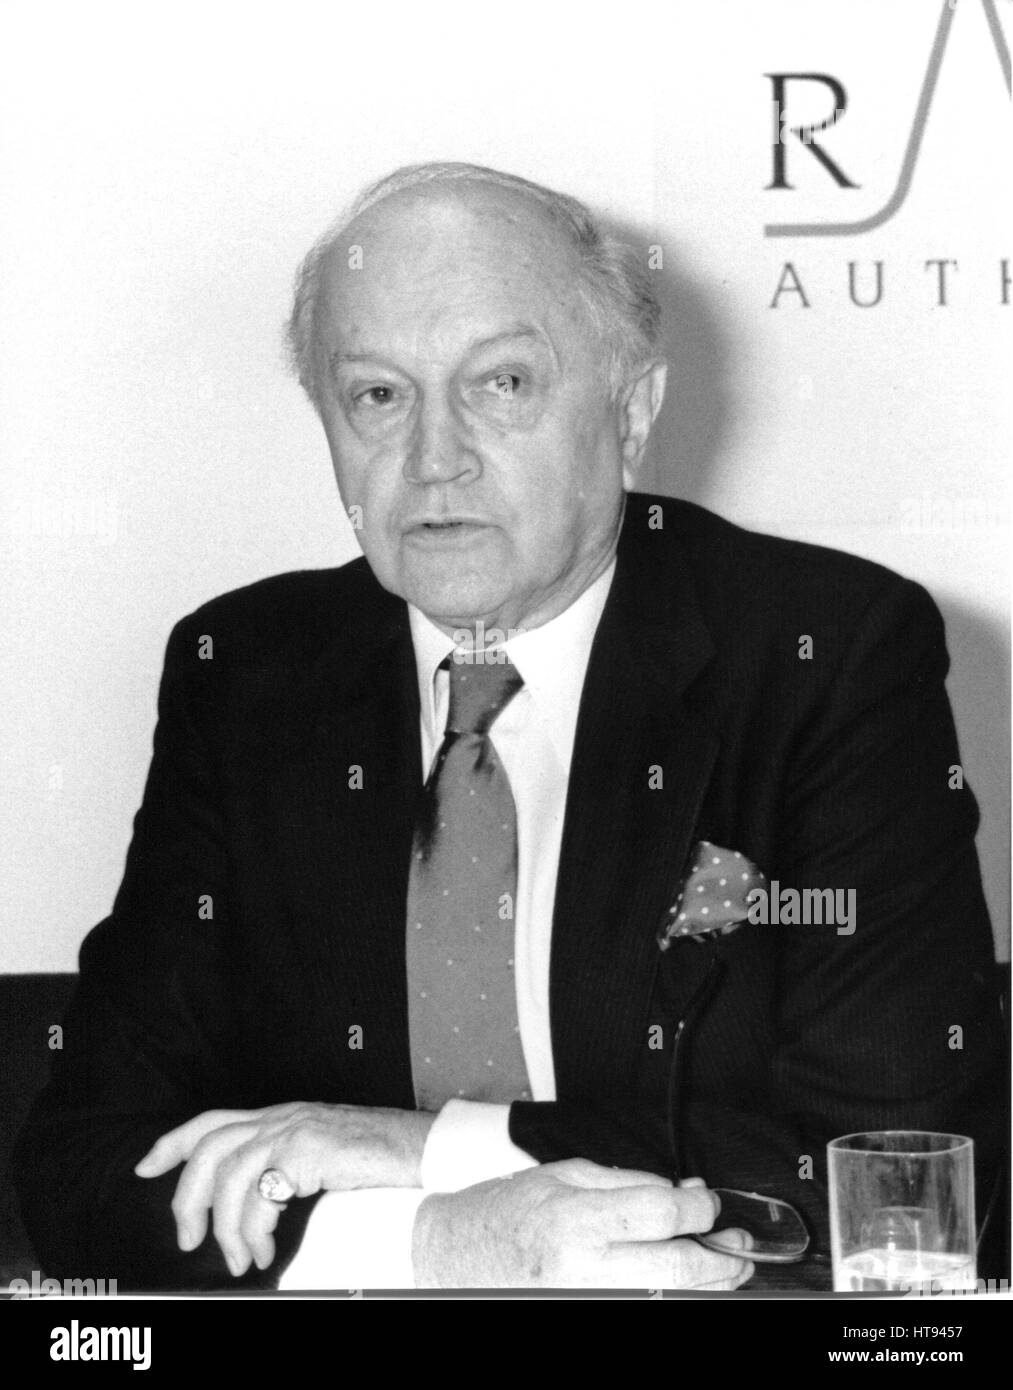 Lord Chalfont (Alun) Gwynne Jones, président de la Radio Authority, tient une conférence de presse à Londres, Angleterre le 9 janvier 1991. Banque D'Images